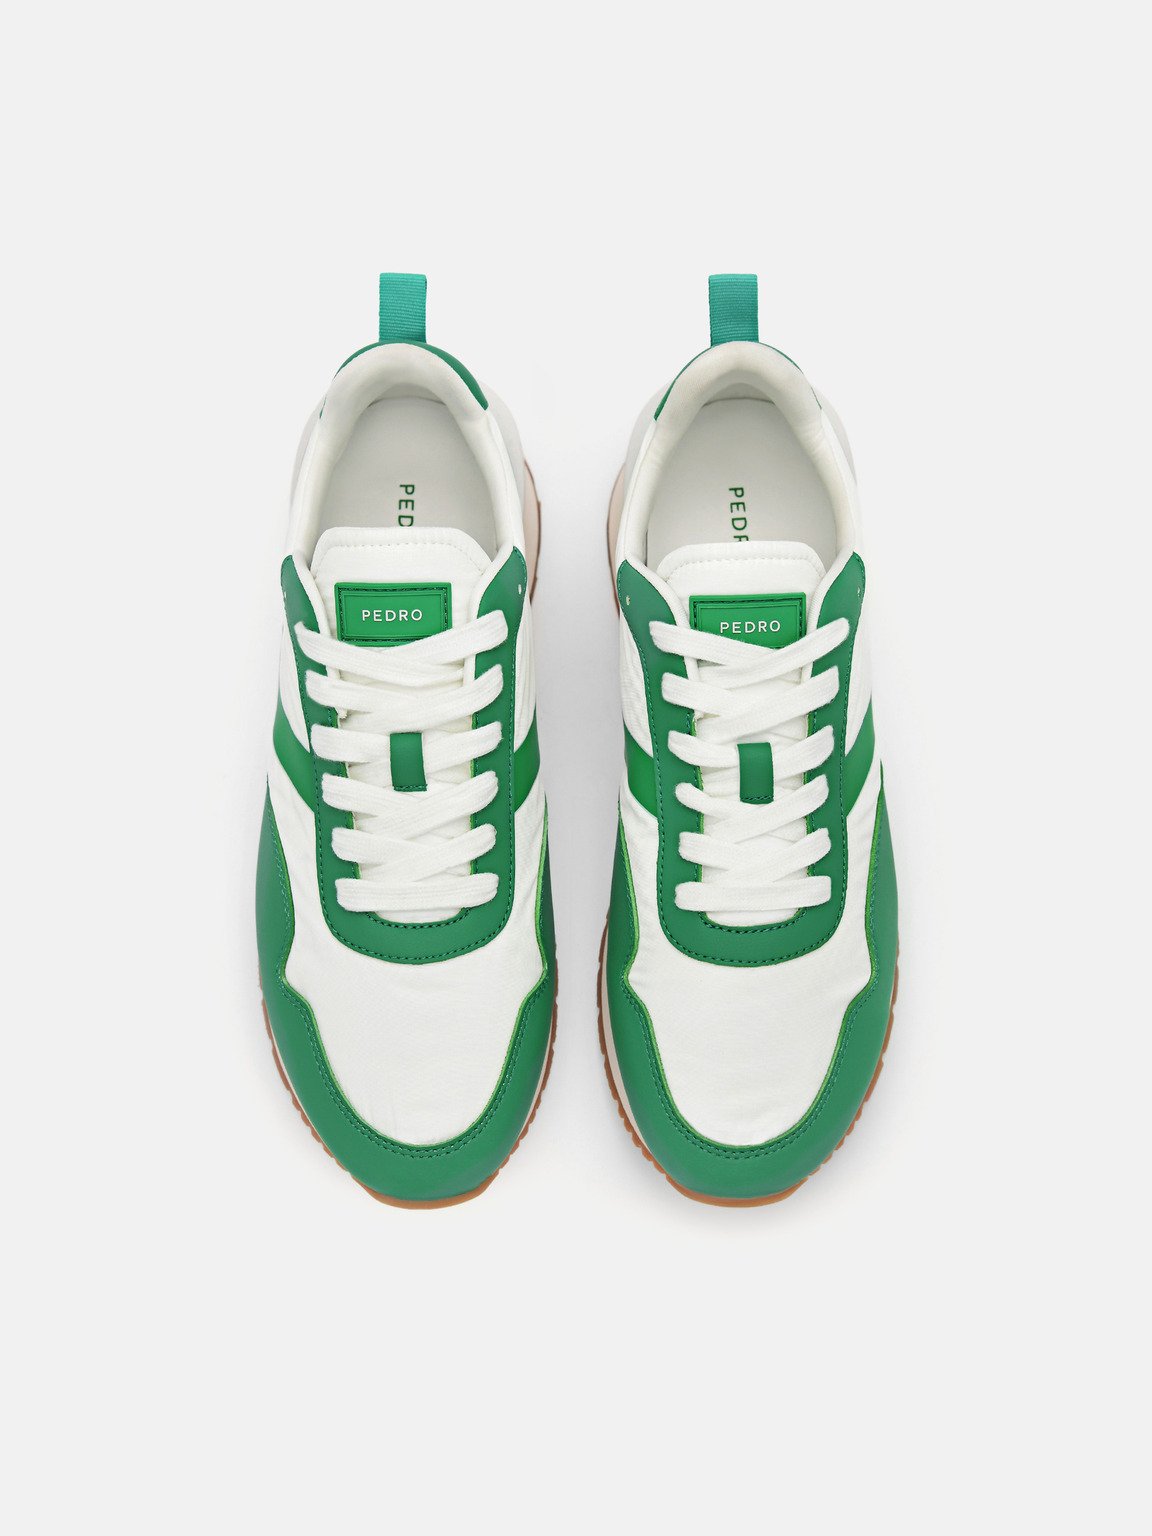 Swift Sneakers, Green